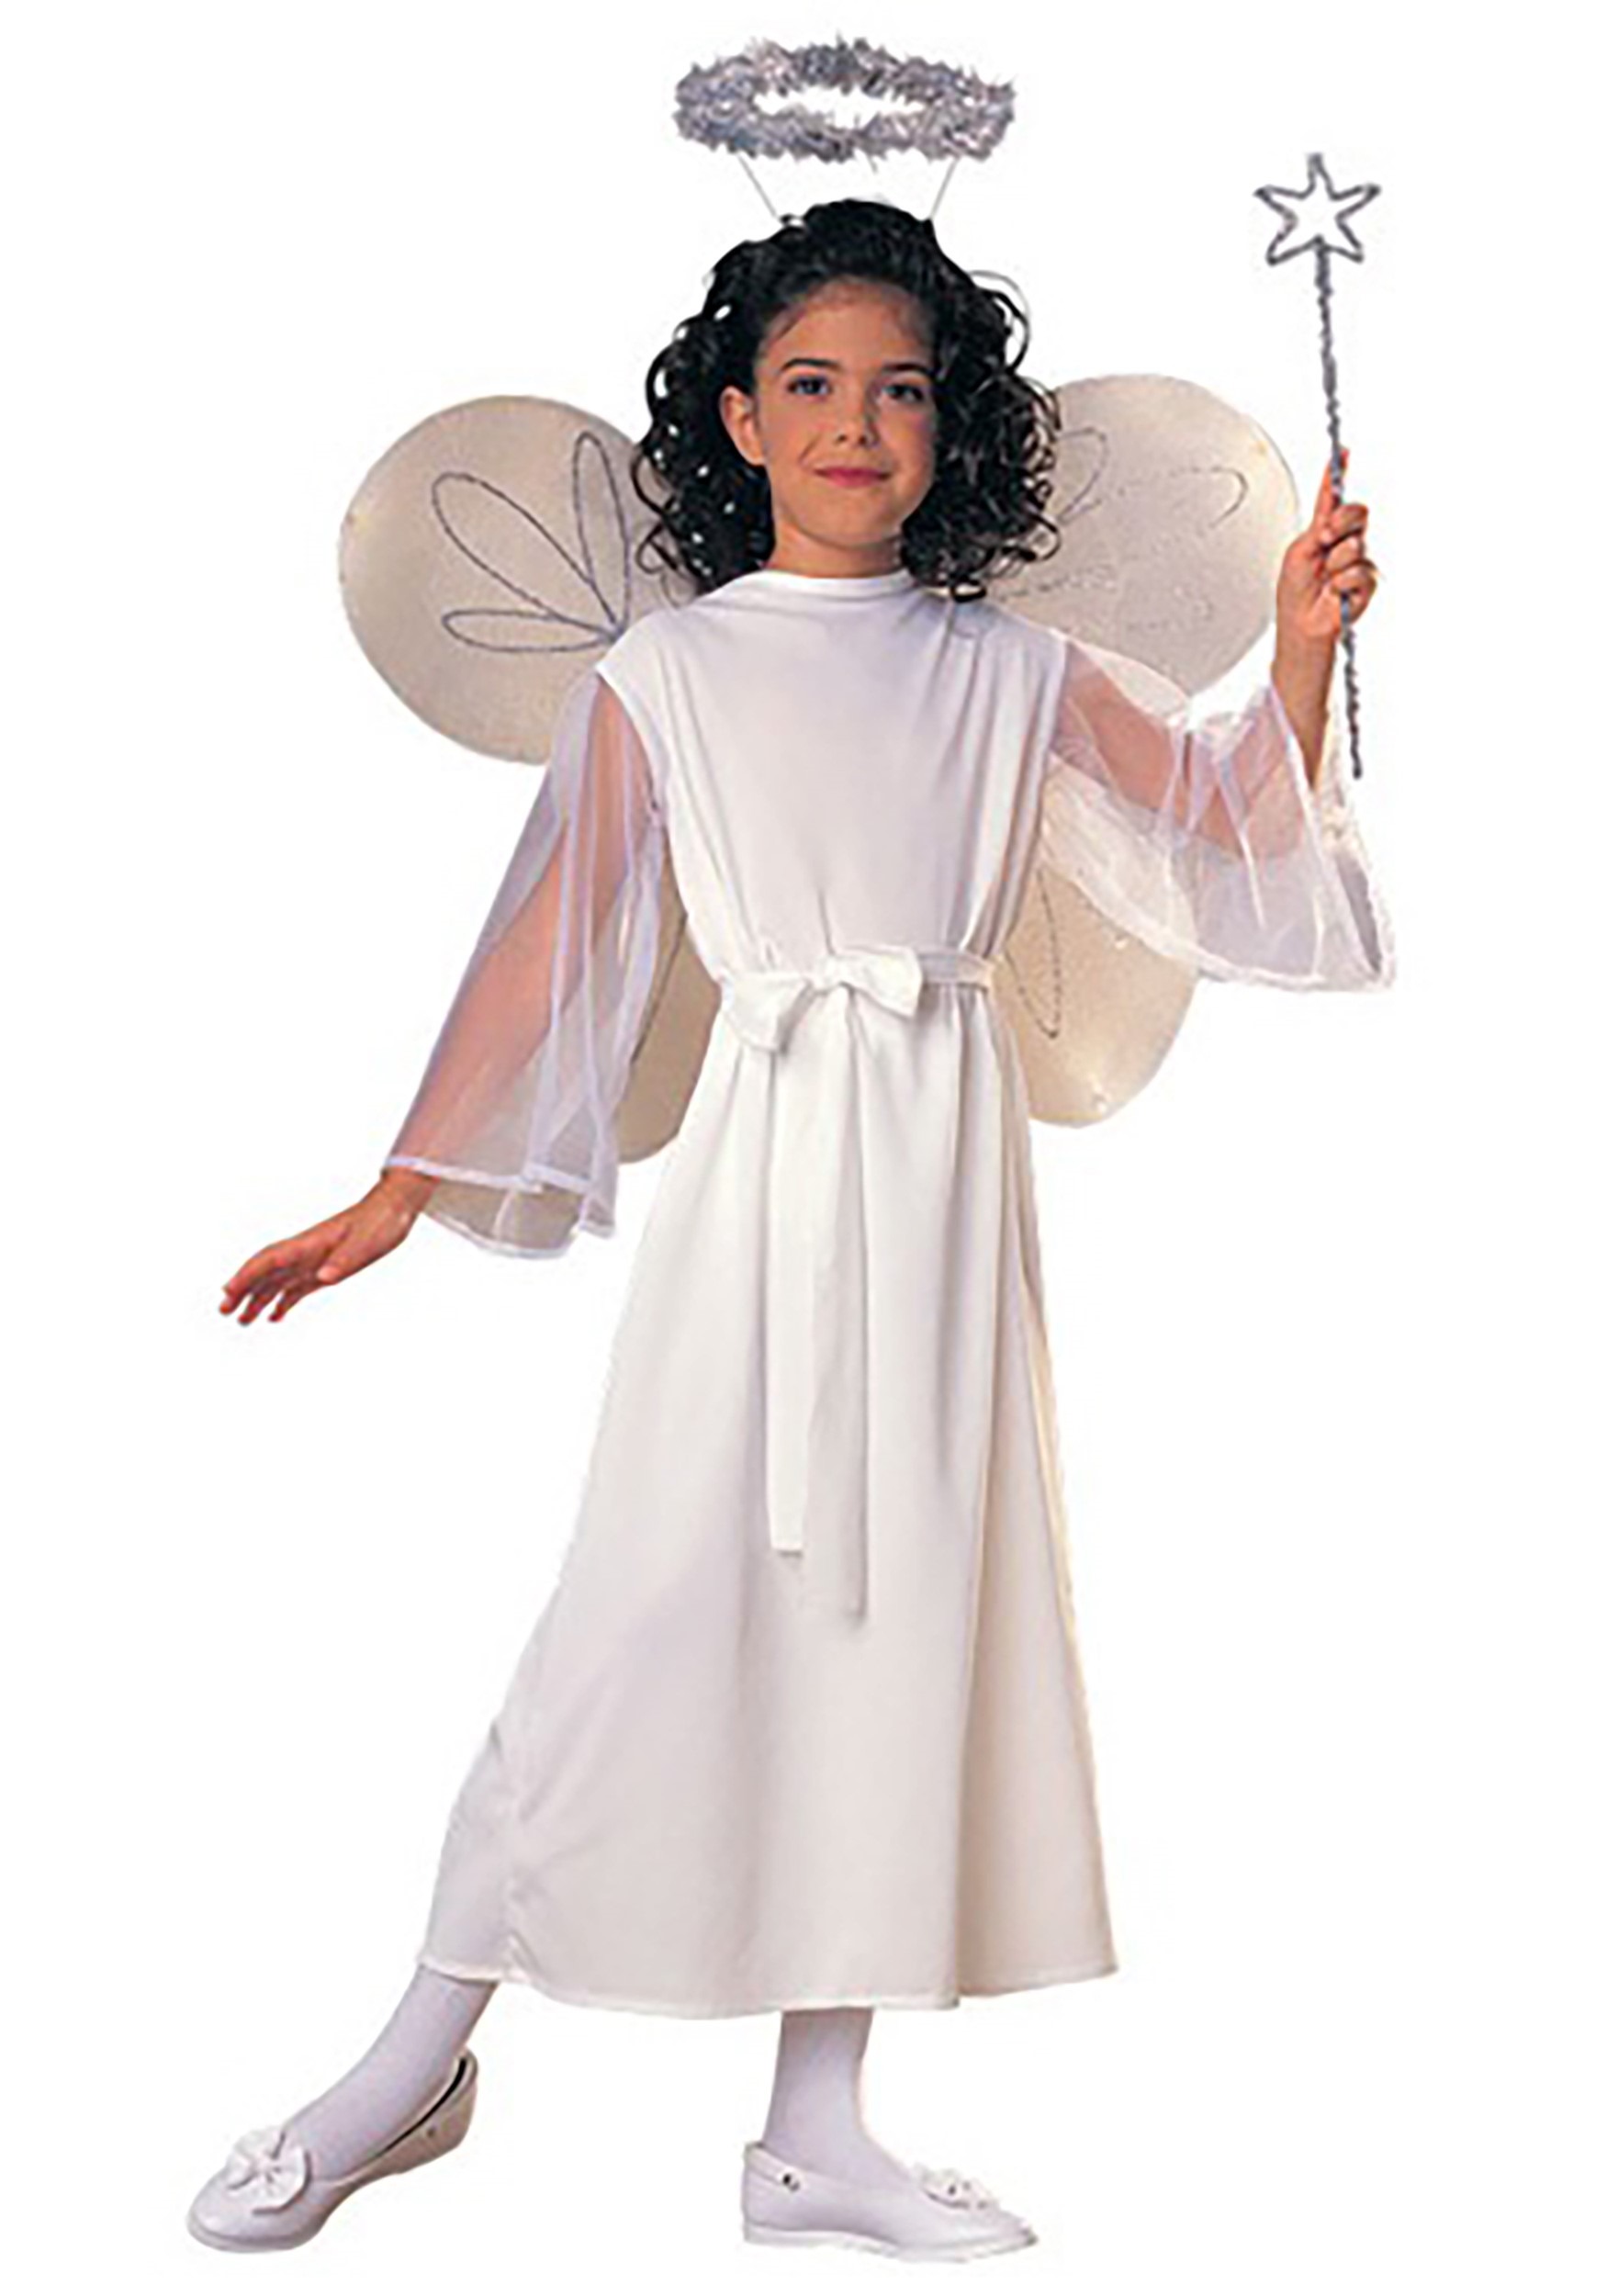 Angel Costume for Girls